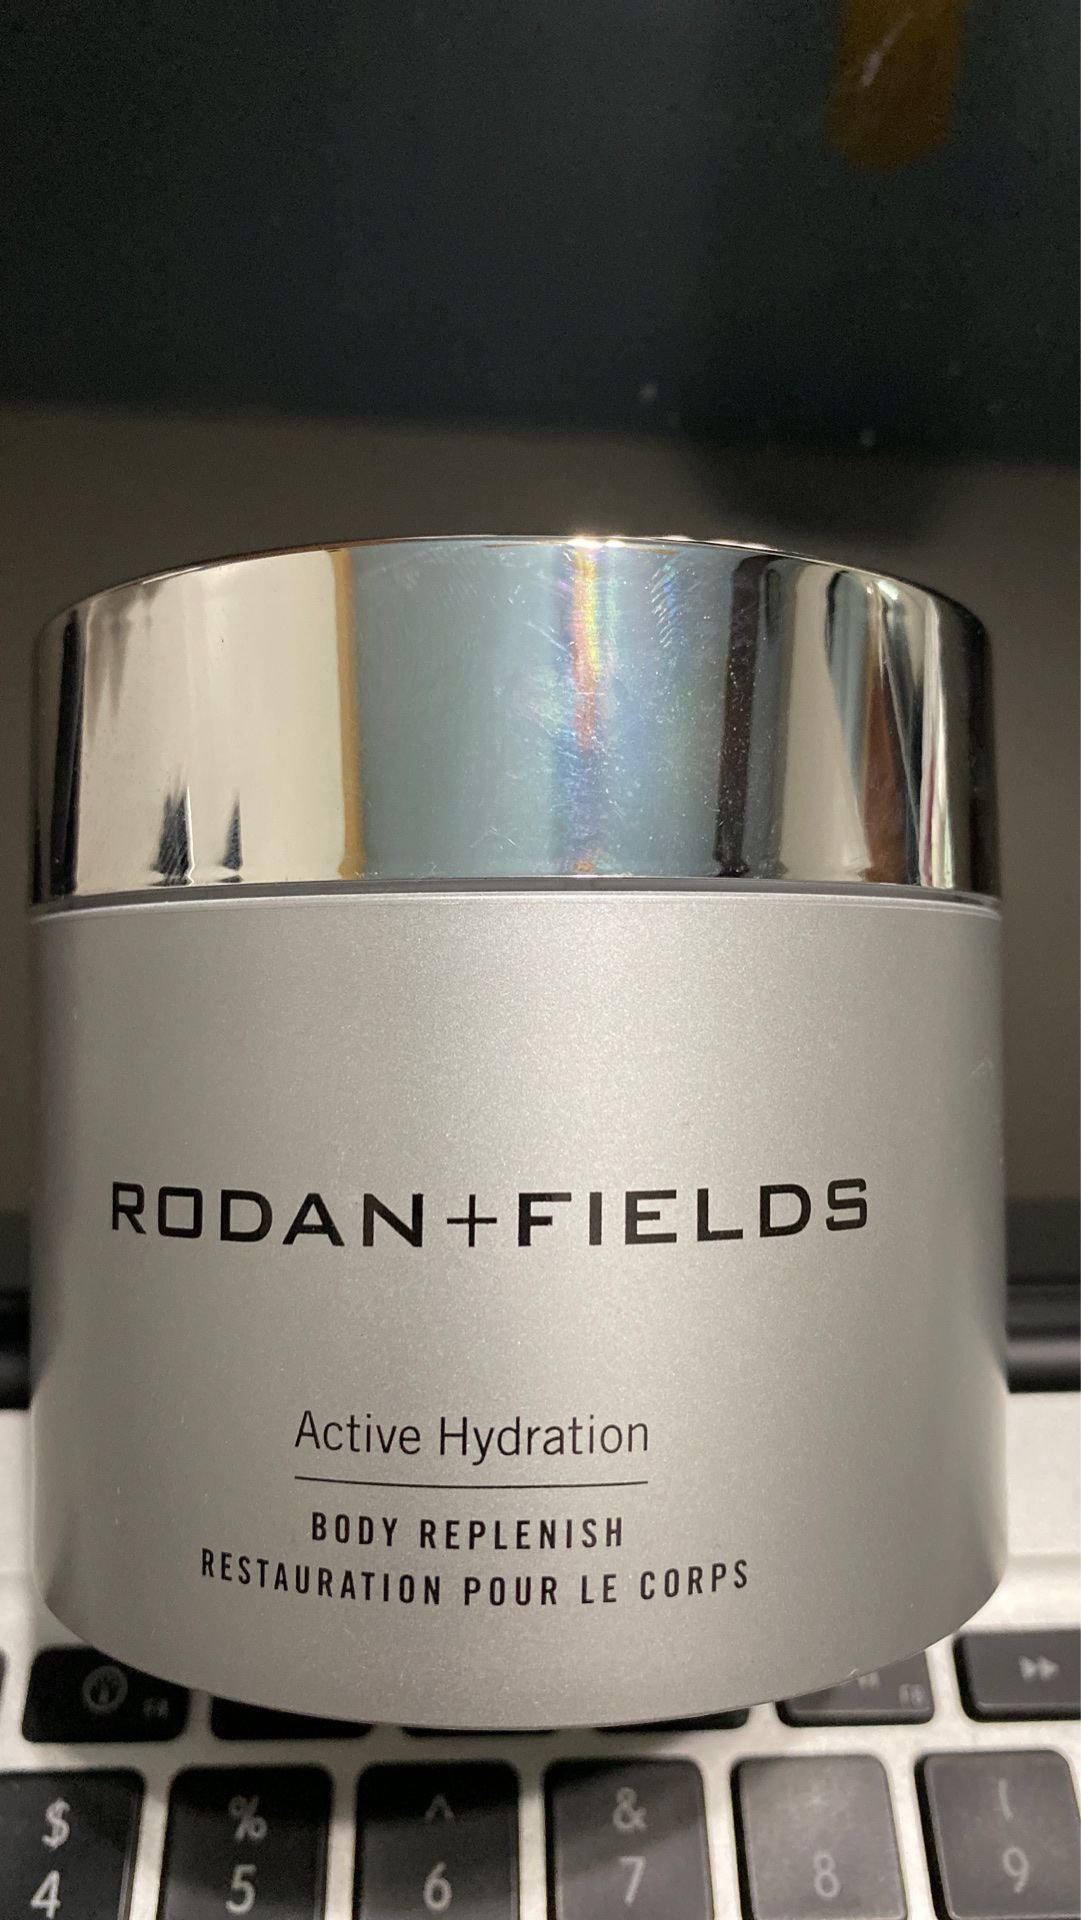 Rodan+fields body replenish